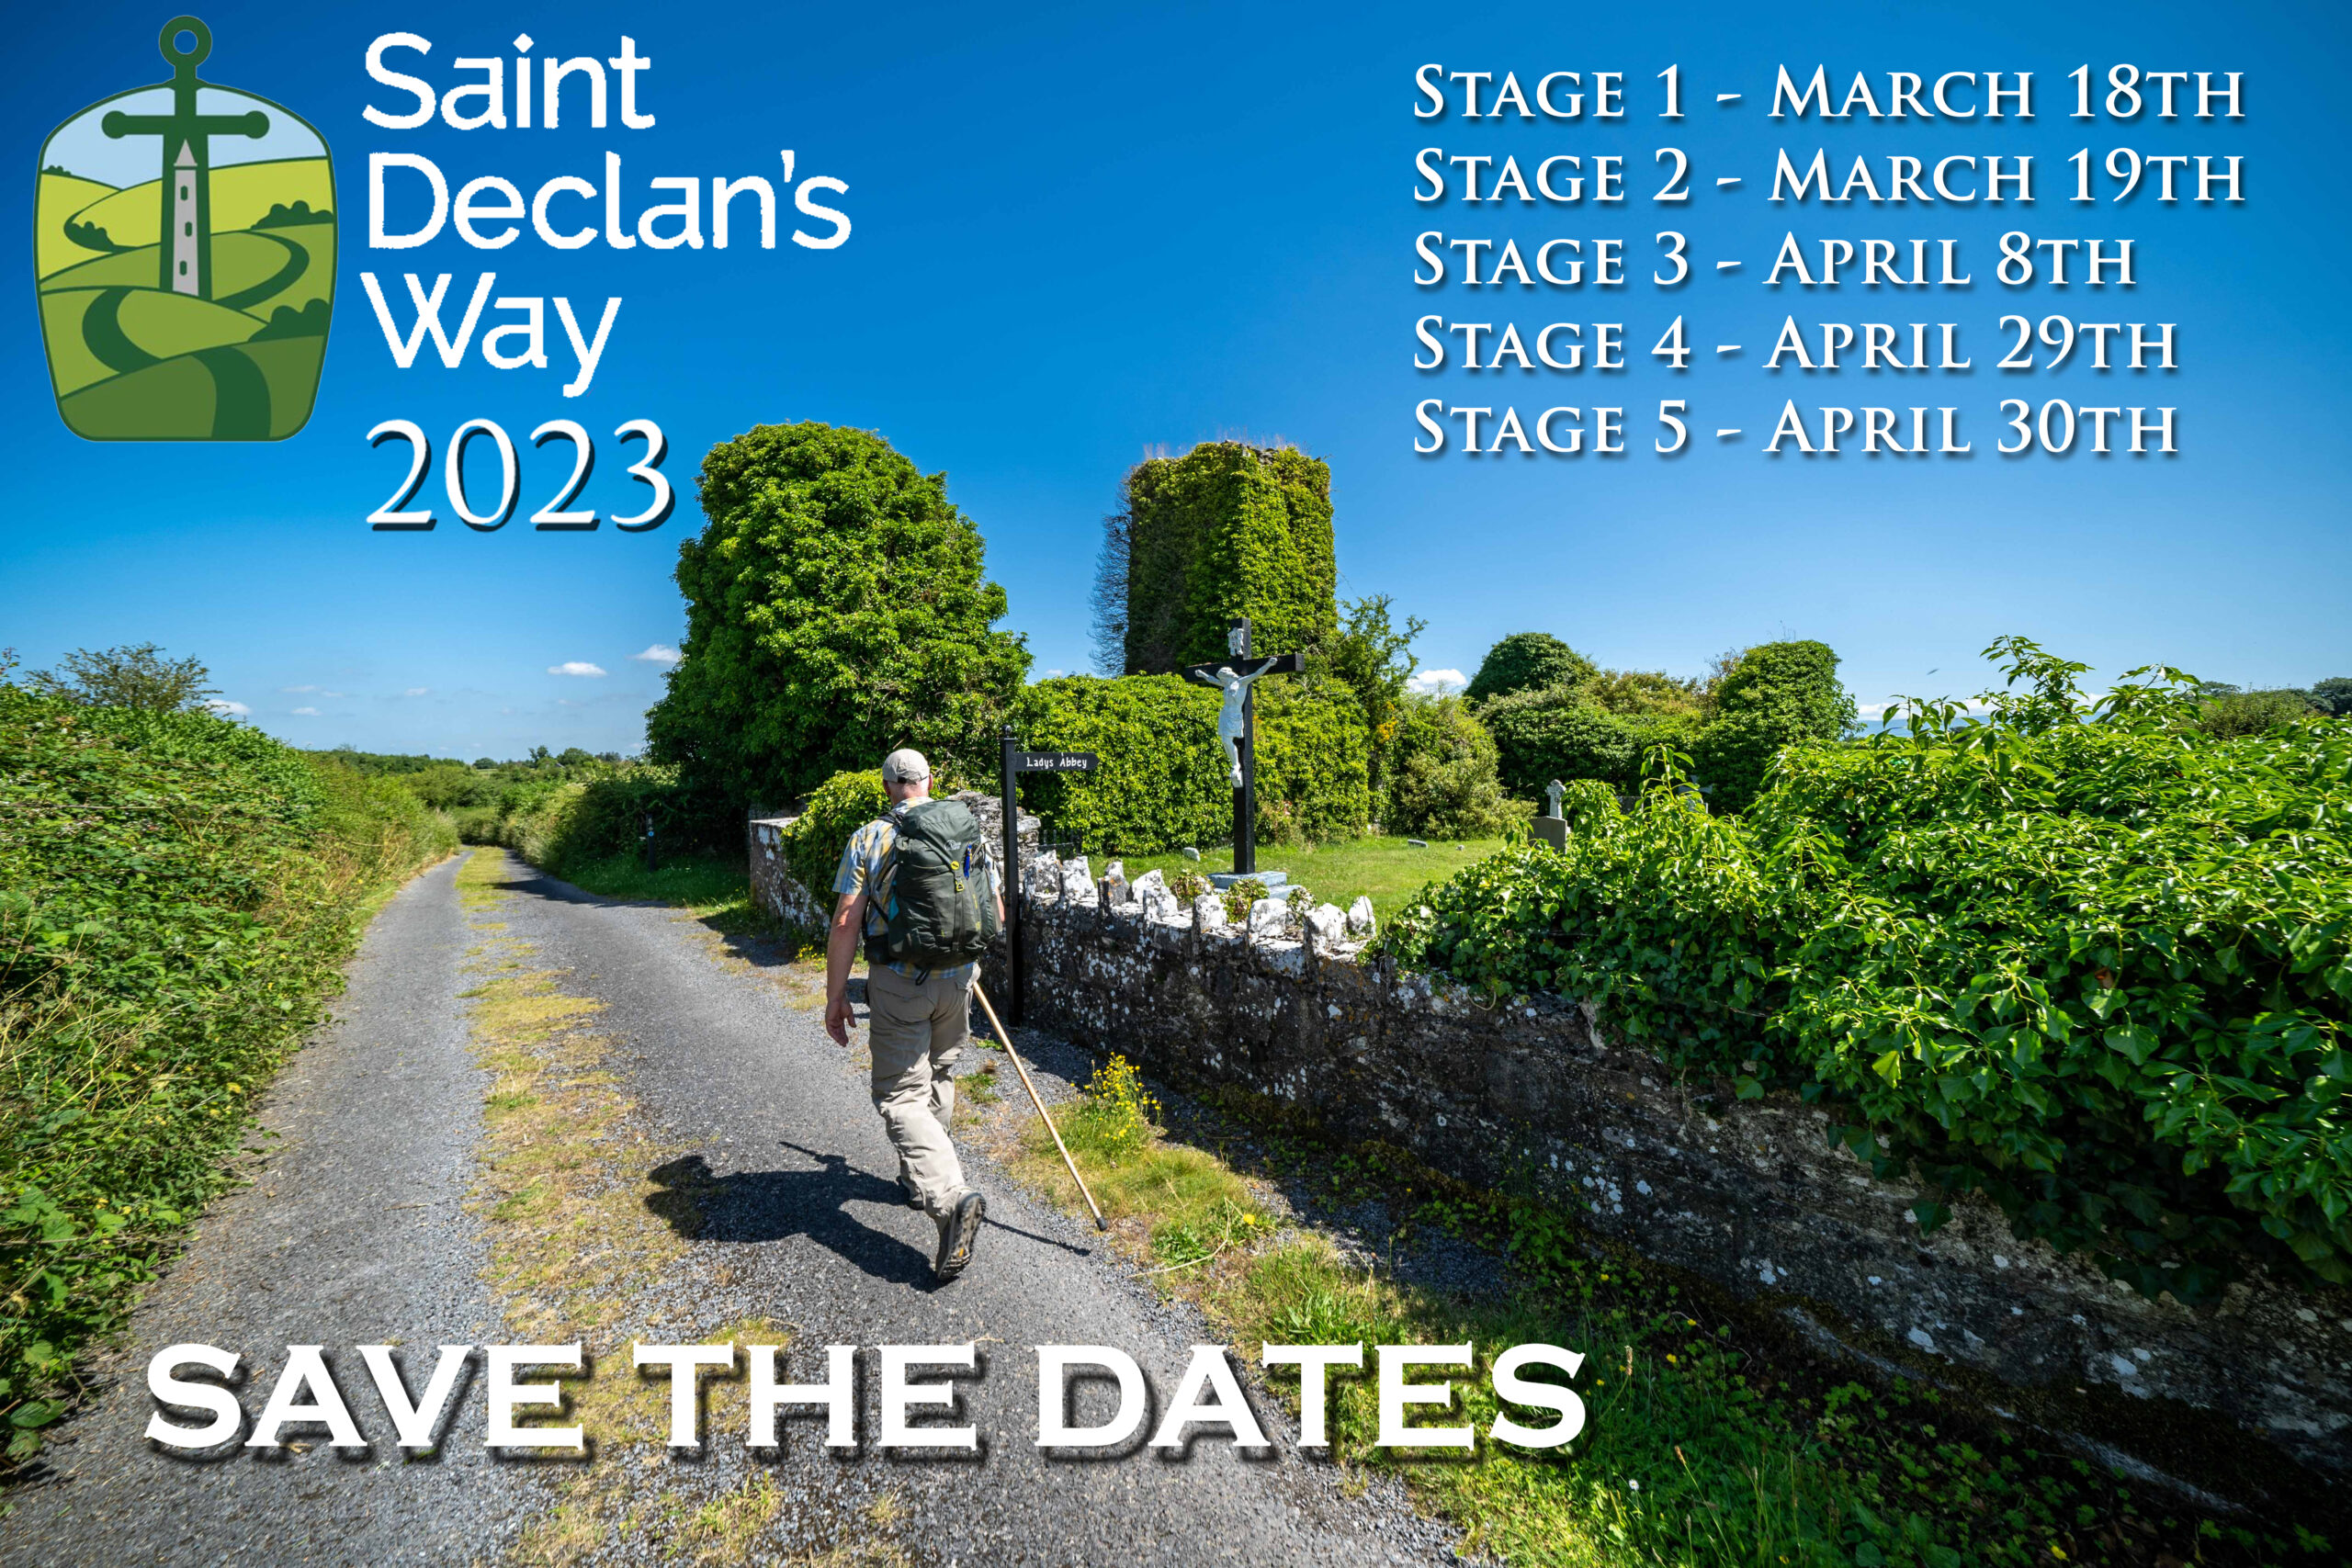 St. Declan's Way Dates 2023